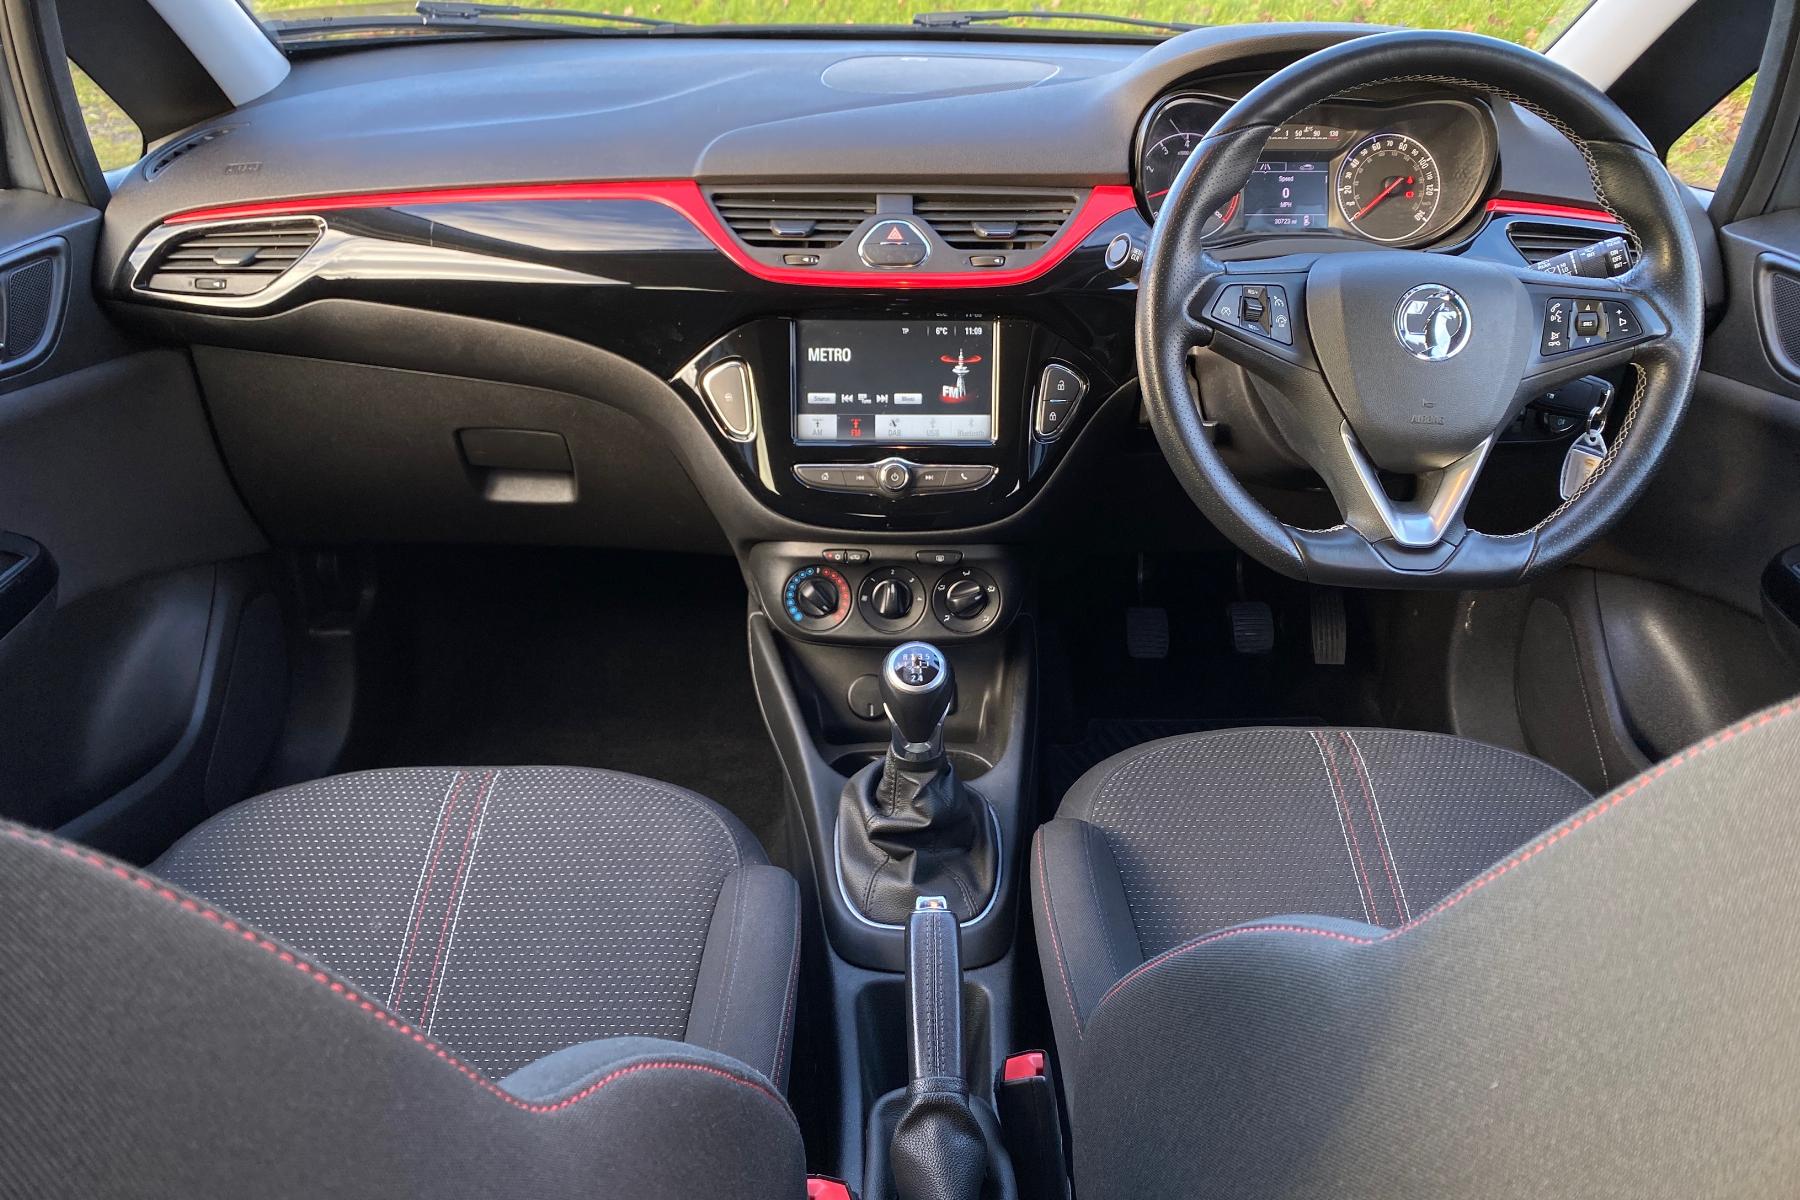 2019 Opel Corsa Black-Edition 5 Door Hatchback Steering Wheel Cars Pictures